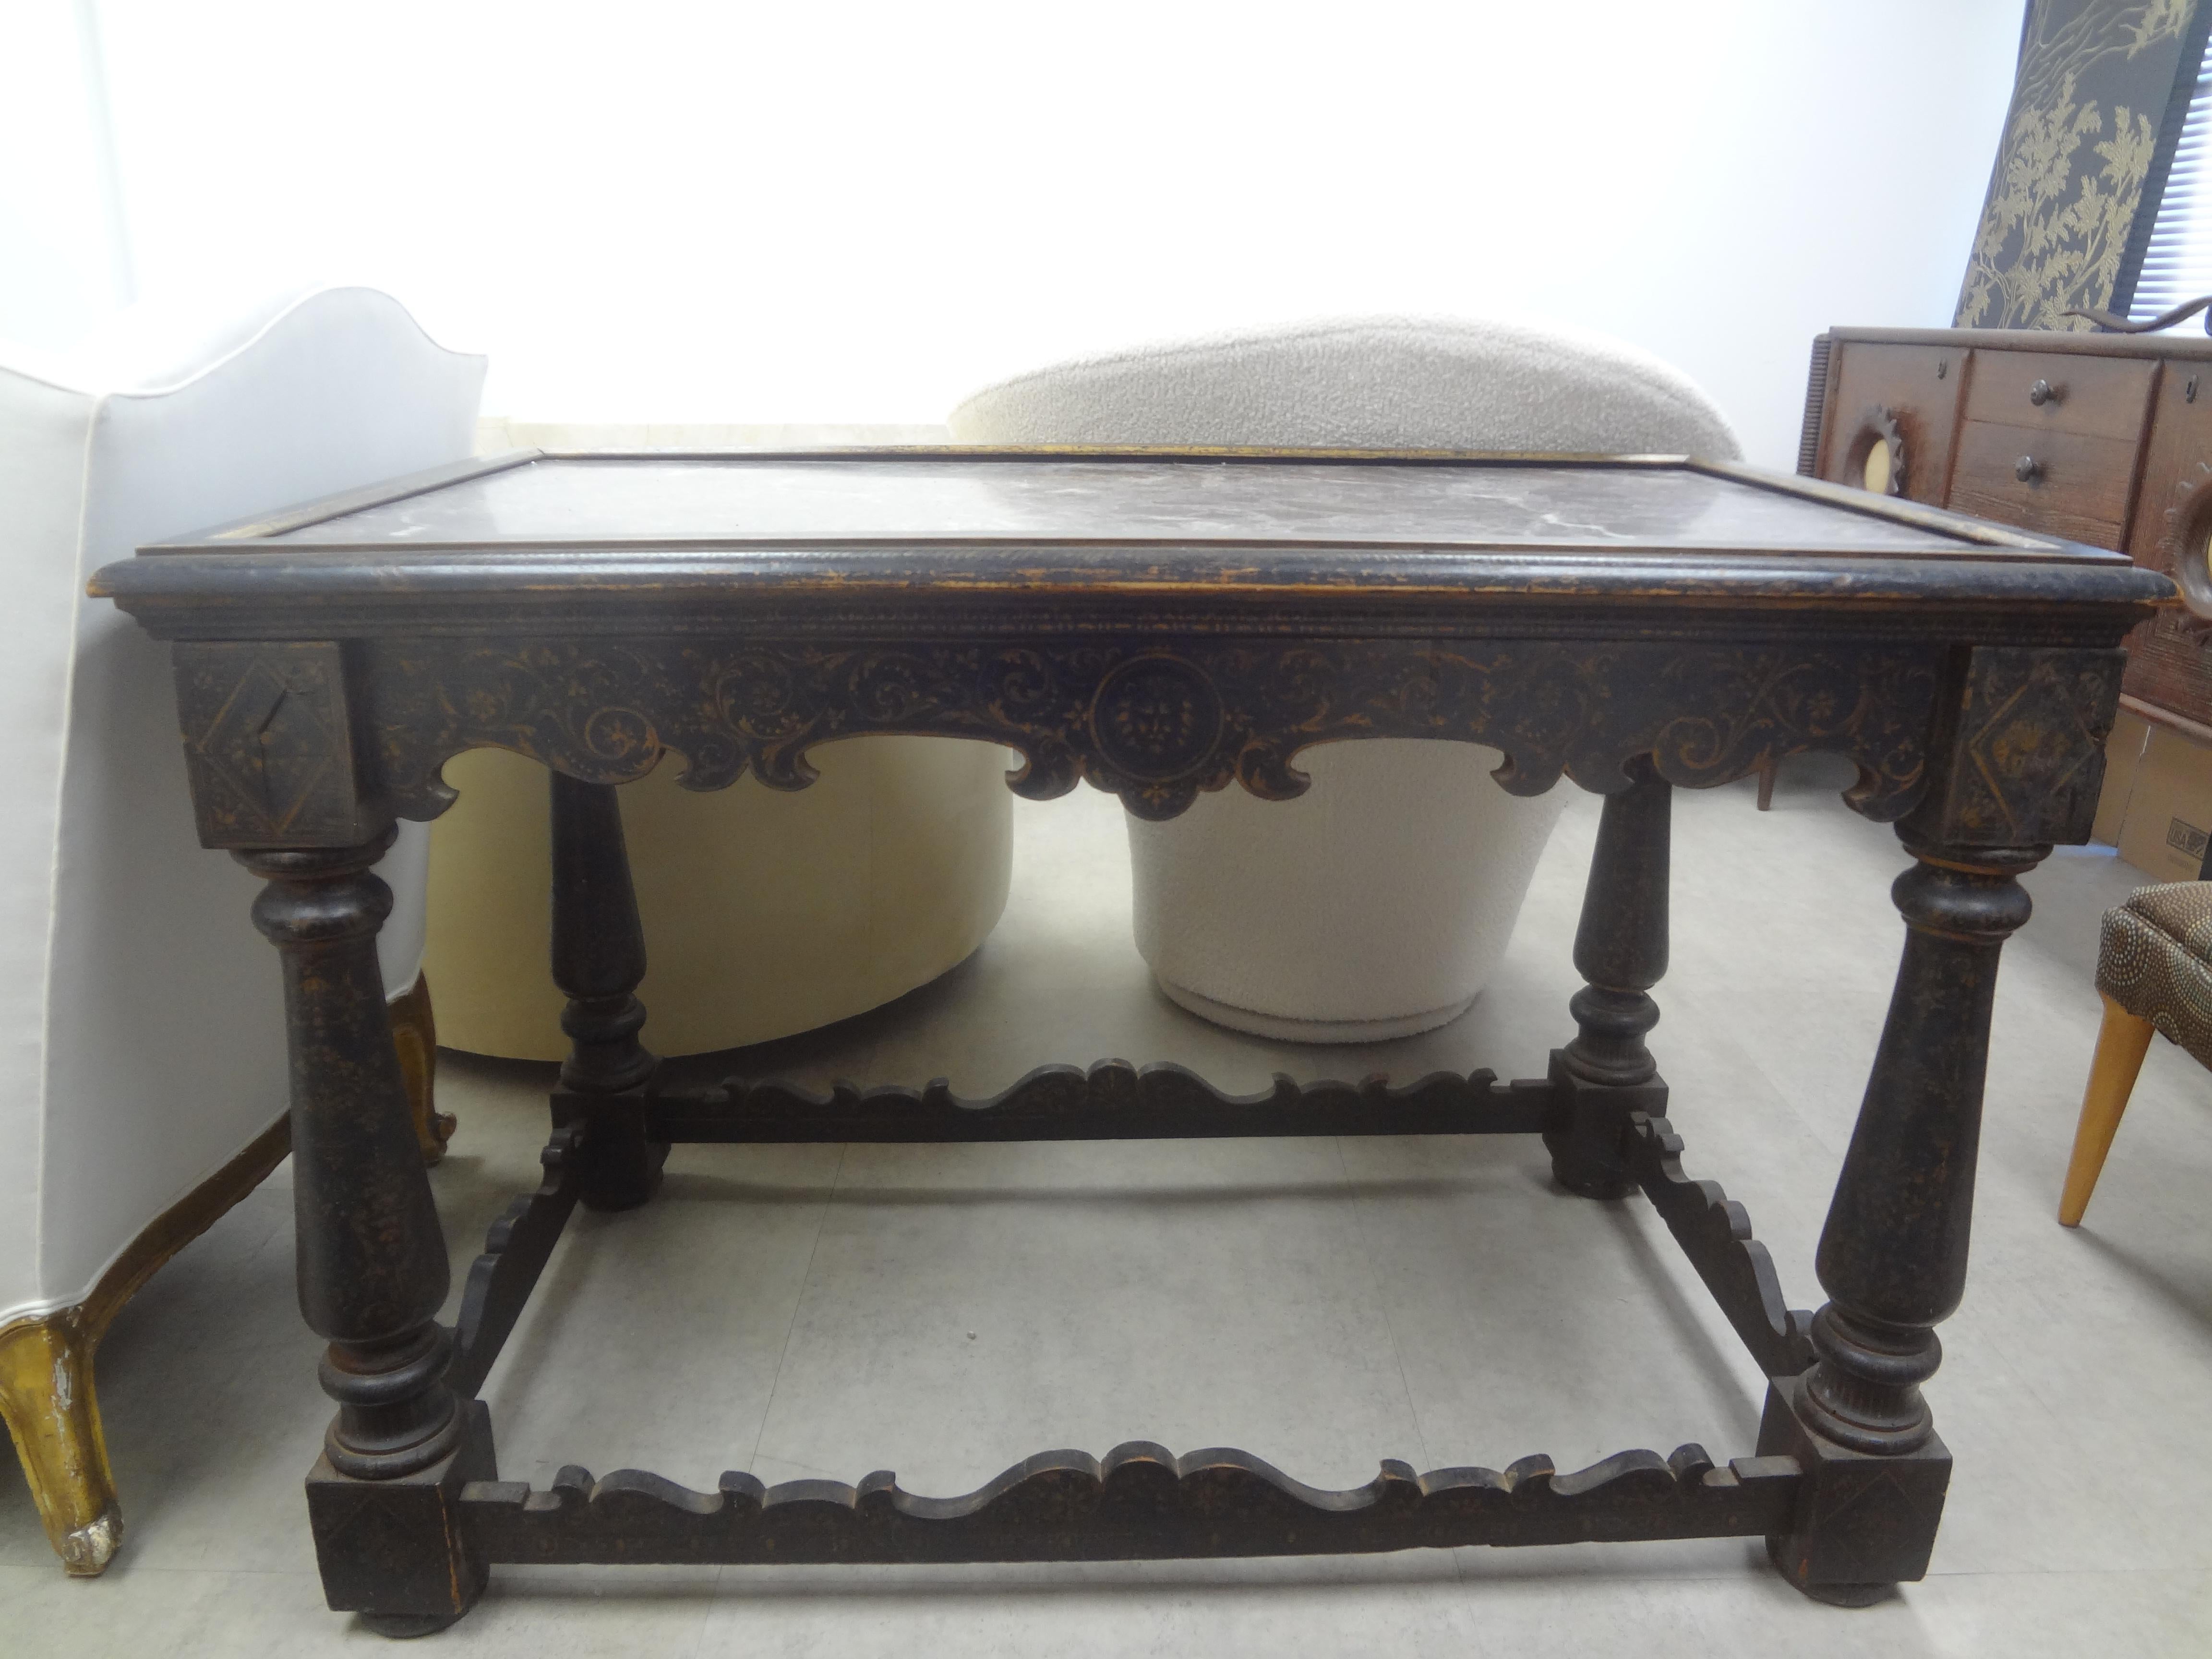 18. Jahrhundert Italienisch Louis XIV Ebonized Center Table.
Unser hübscher rechteckiger toskanischer Tisch aus ebonisiertem Obstholz aus dem 18. Jahrhundert, Beistelltisch oder Mitteltisch, hat gedrechselte Beine, eine wunderschön geschnitzte, von